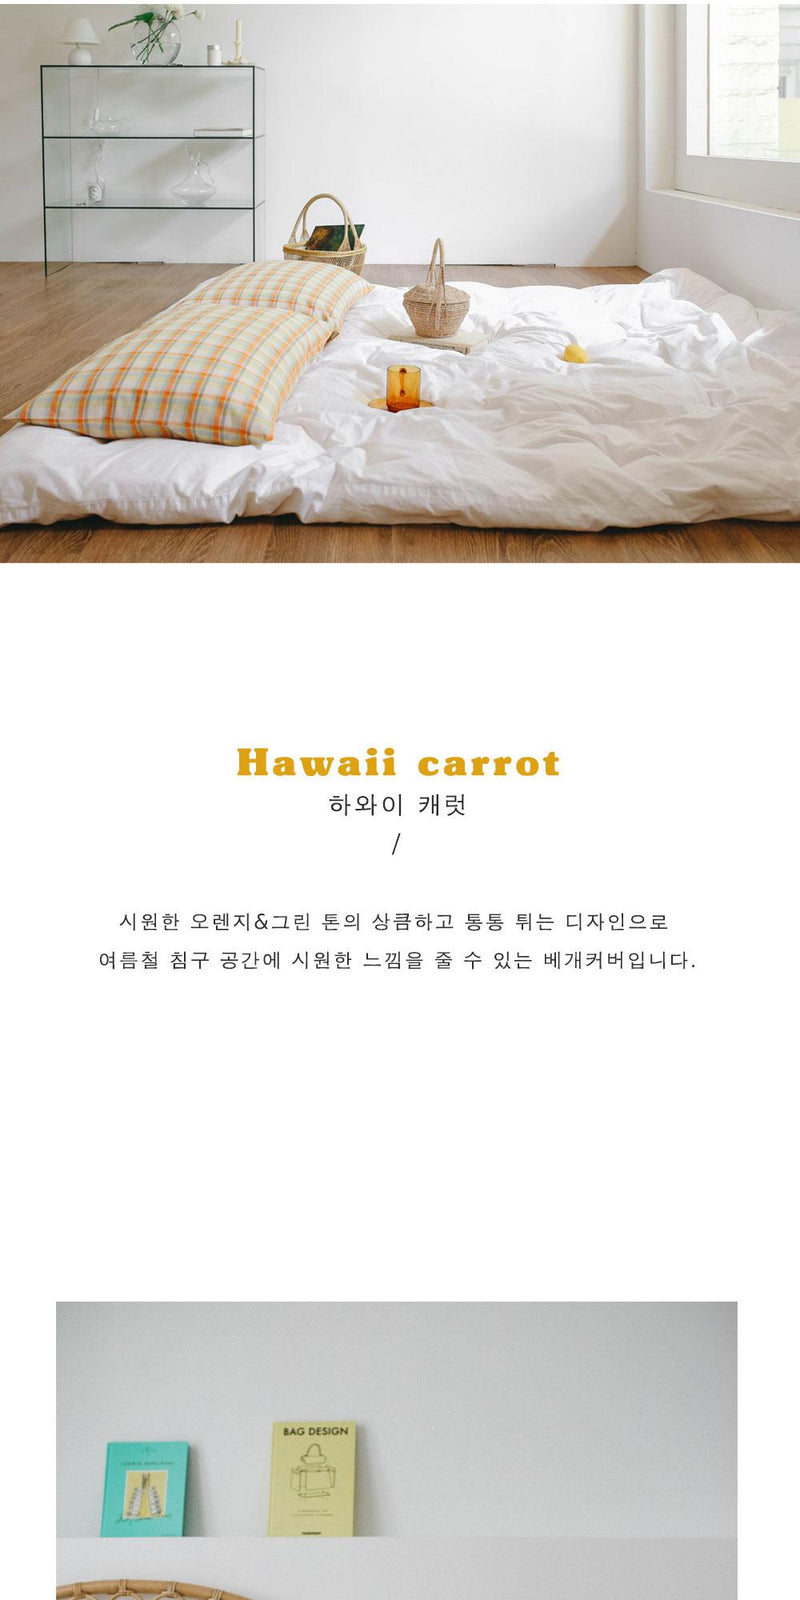 Hawaii carrot pillow cover